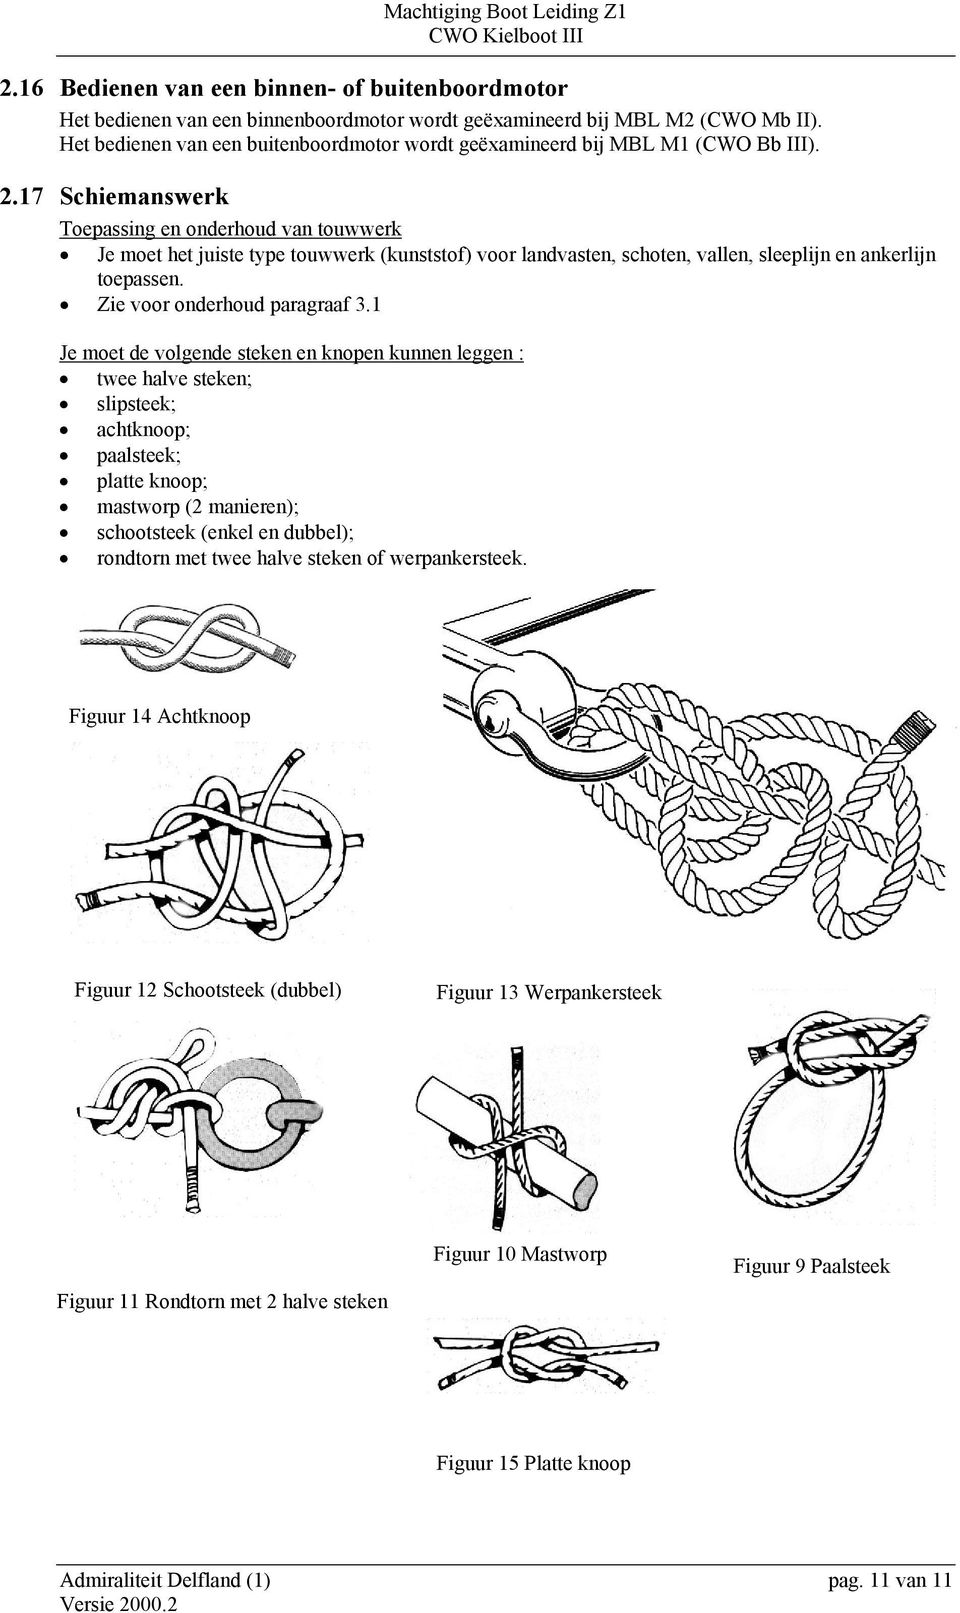 17 Schiemanswerk Toepassing en onderhoud van touwwerk Je moet het juiste type touwwerk (kunststof) voor landvasten, schoten, vallen, sleeplijn en ankerlijn toepassen. Zie voor onderhoud paragraaf 3.